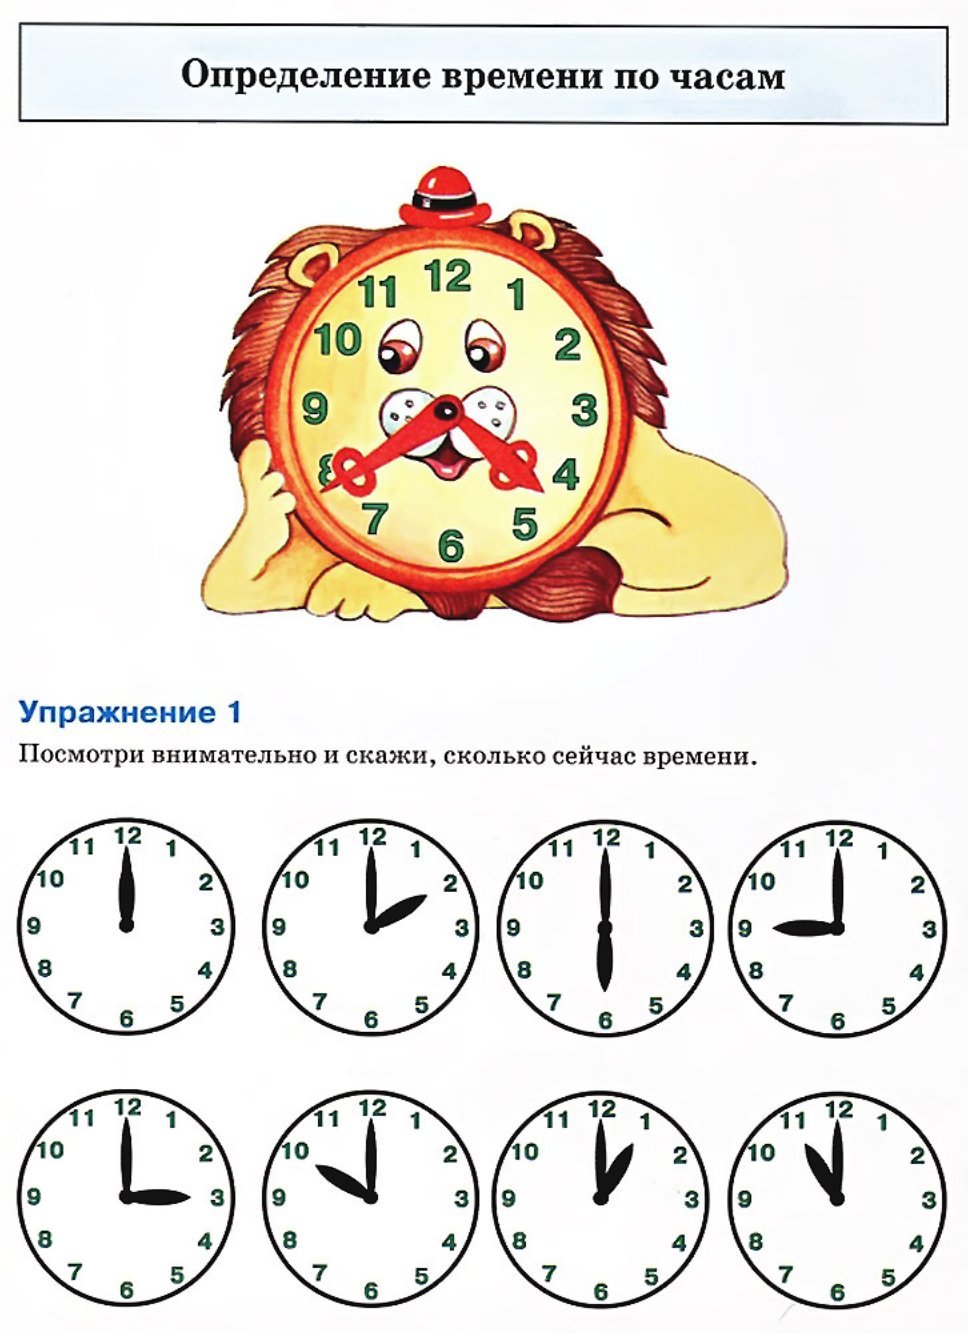 Определение времени. Задания на определение времени. Определение времени по часам. Задания с часами. Задания на определение времени по часам.